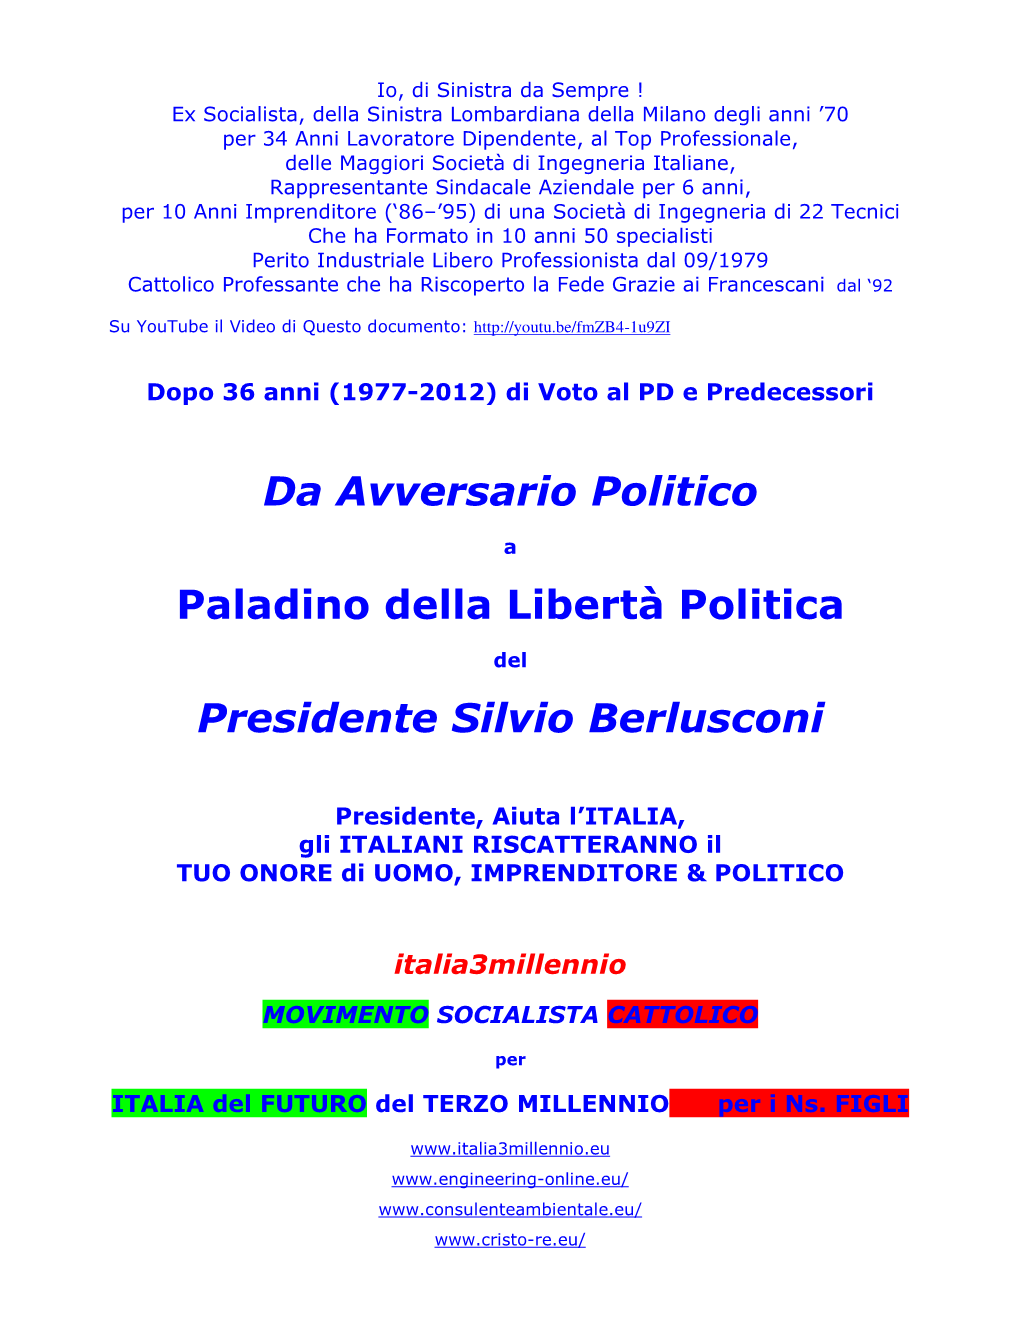 Da Avversario Politico Paladino Della Libertà Politica Presidente Silvio Berlusconi